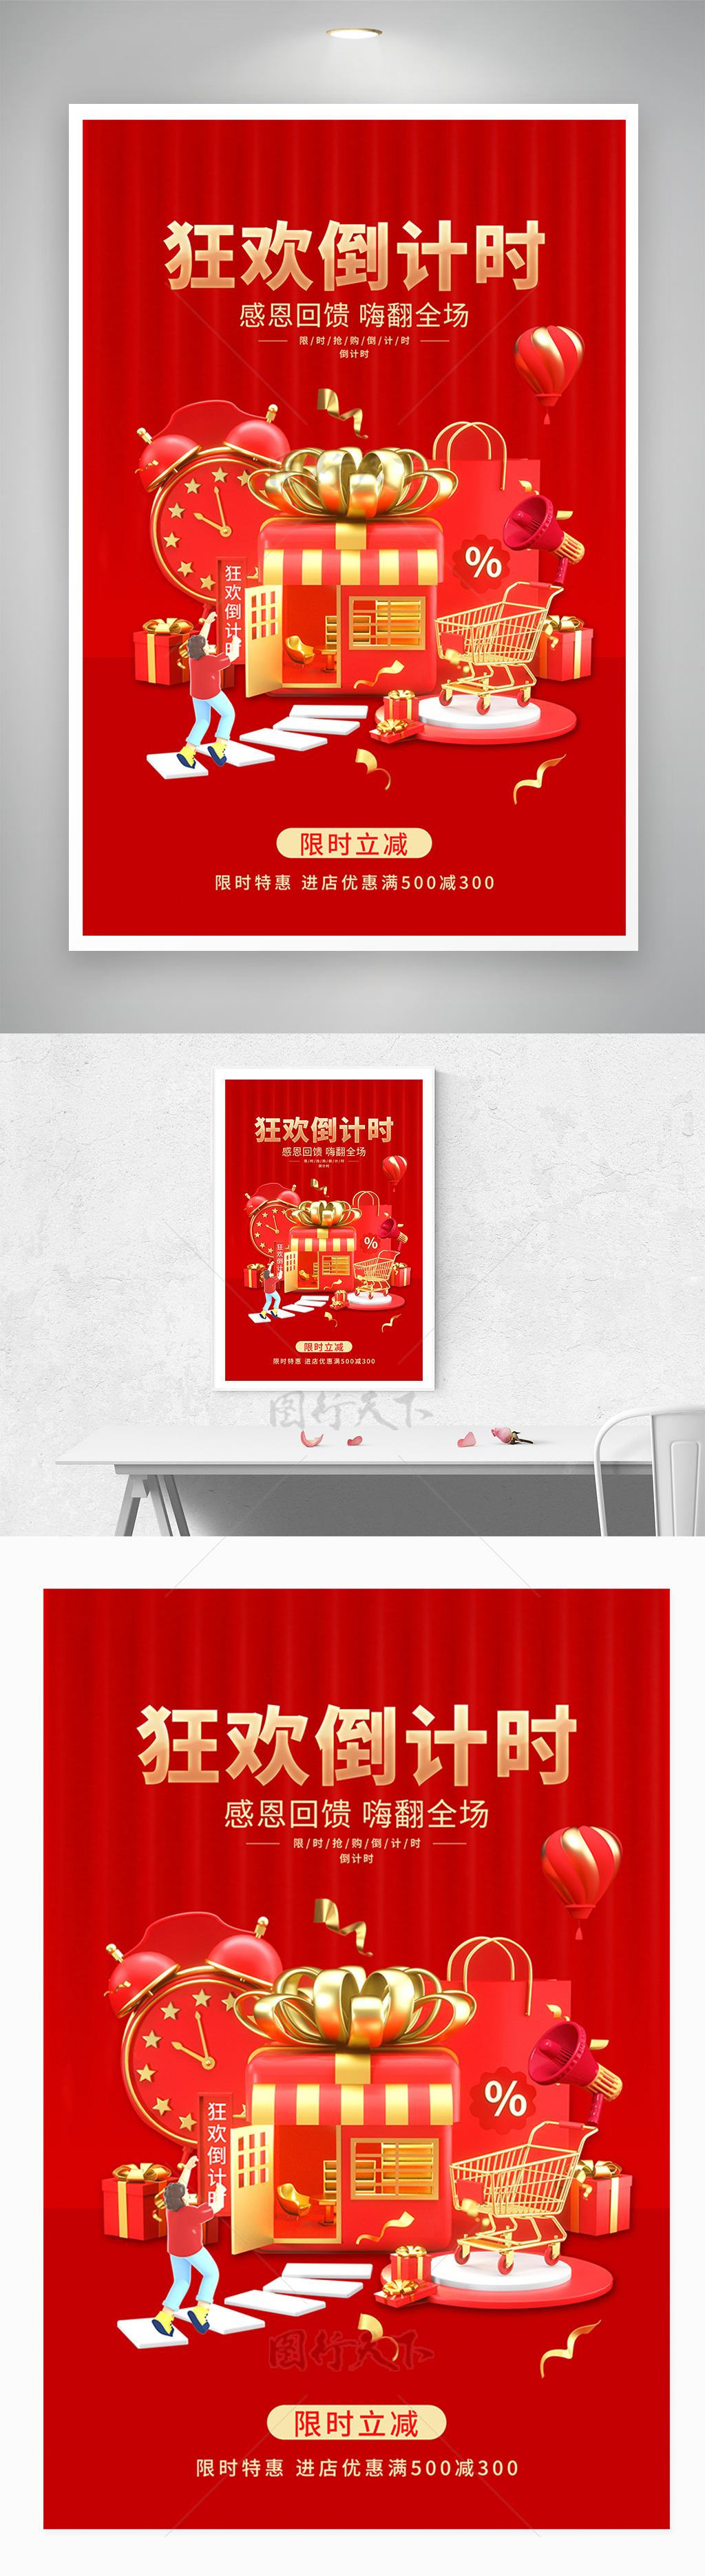 春节倒计时促销海报